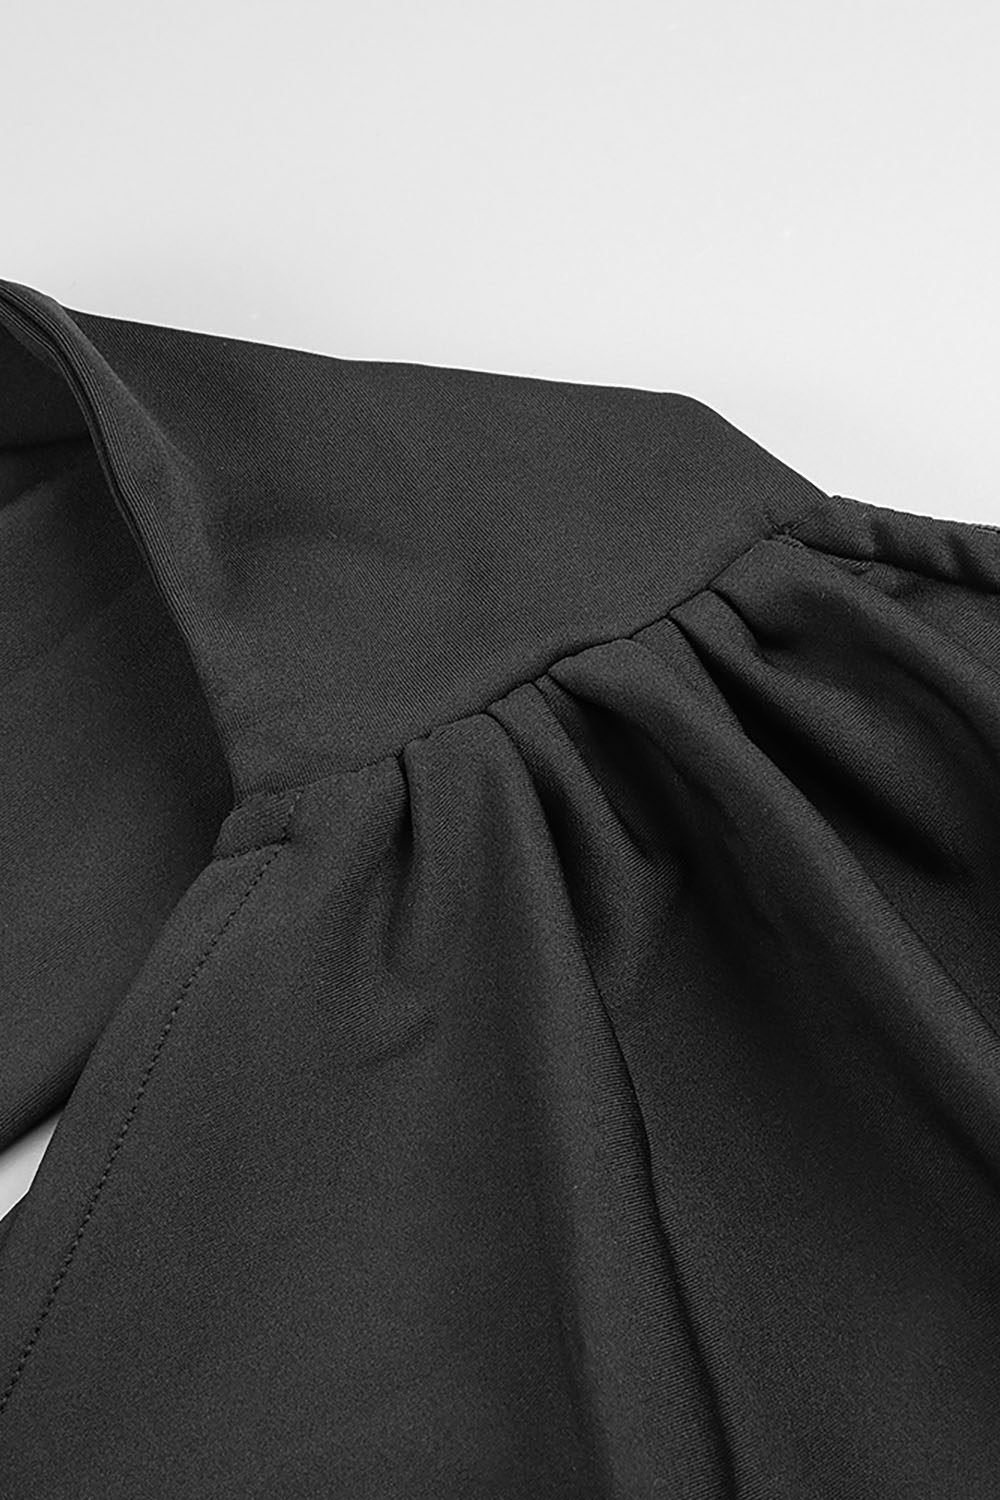 Vestidos largos negros de malla de algodón satinado de manga única